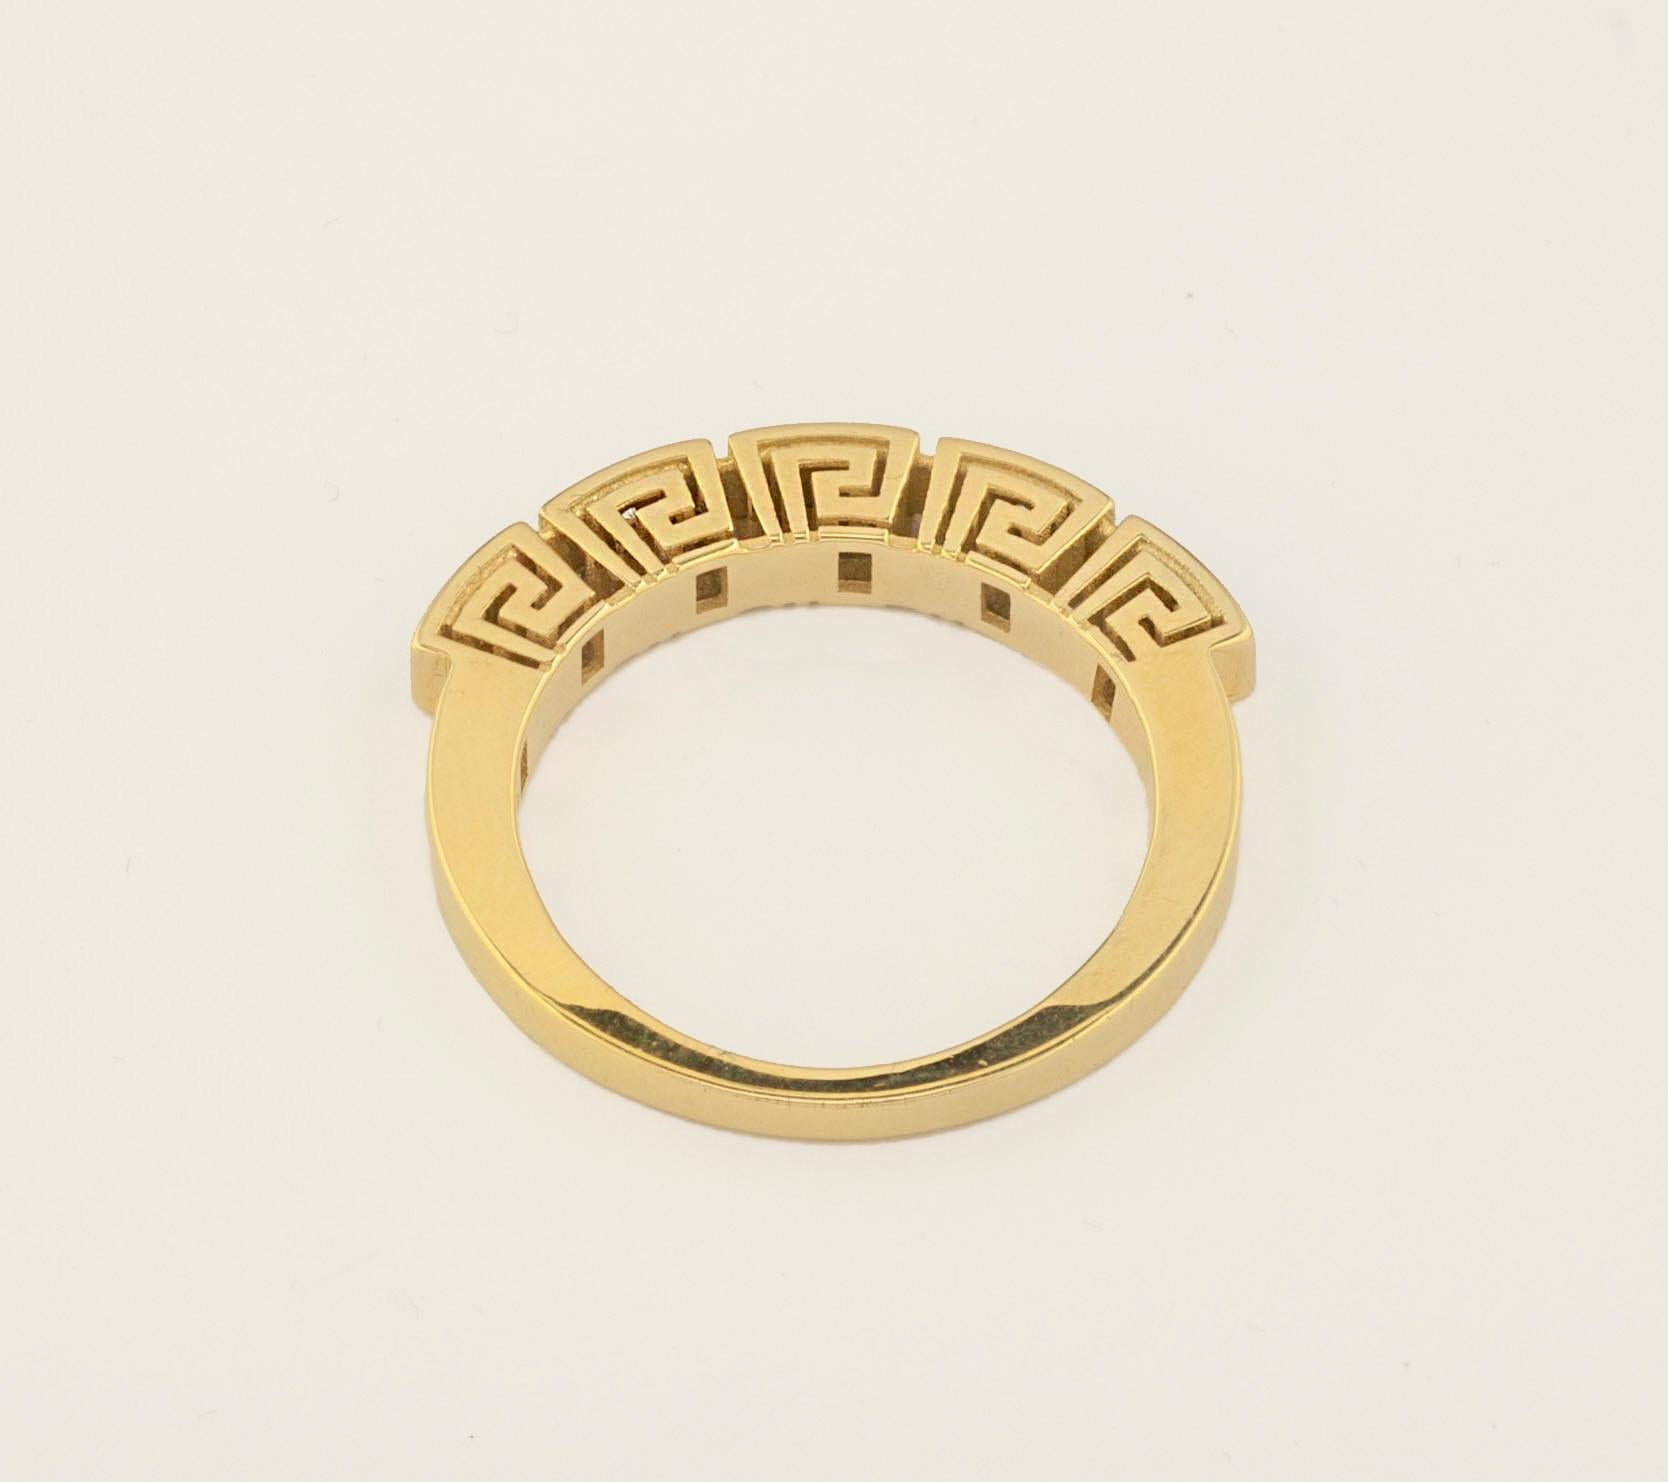 Dieser S.Georgios Designer-Ring ist handgefertigt aus massivem 18 Karat Gelbgold und mikroskopisch verziert mit einem einzigartigen griechischen Design. Dieser wunderschöne Ring enthält 5 weiße Diamanten im Brillantschliff mit einem Gesamtgewicht